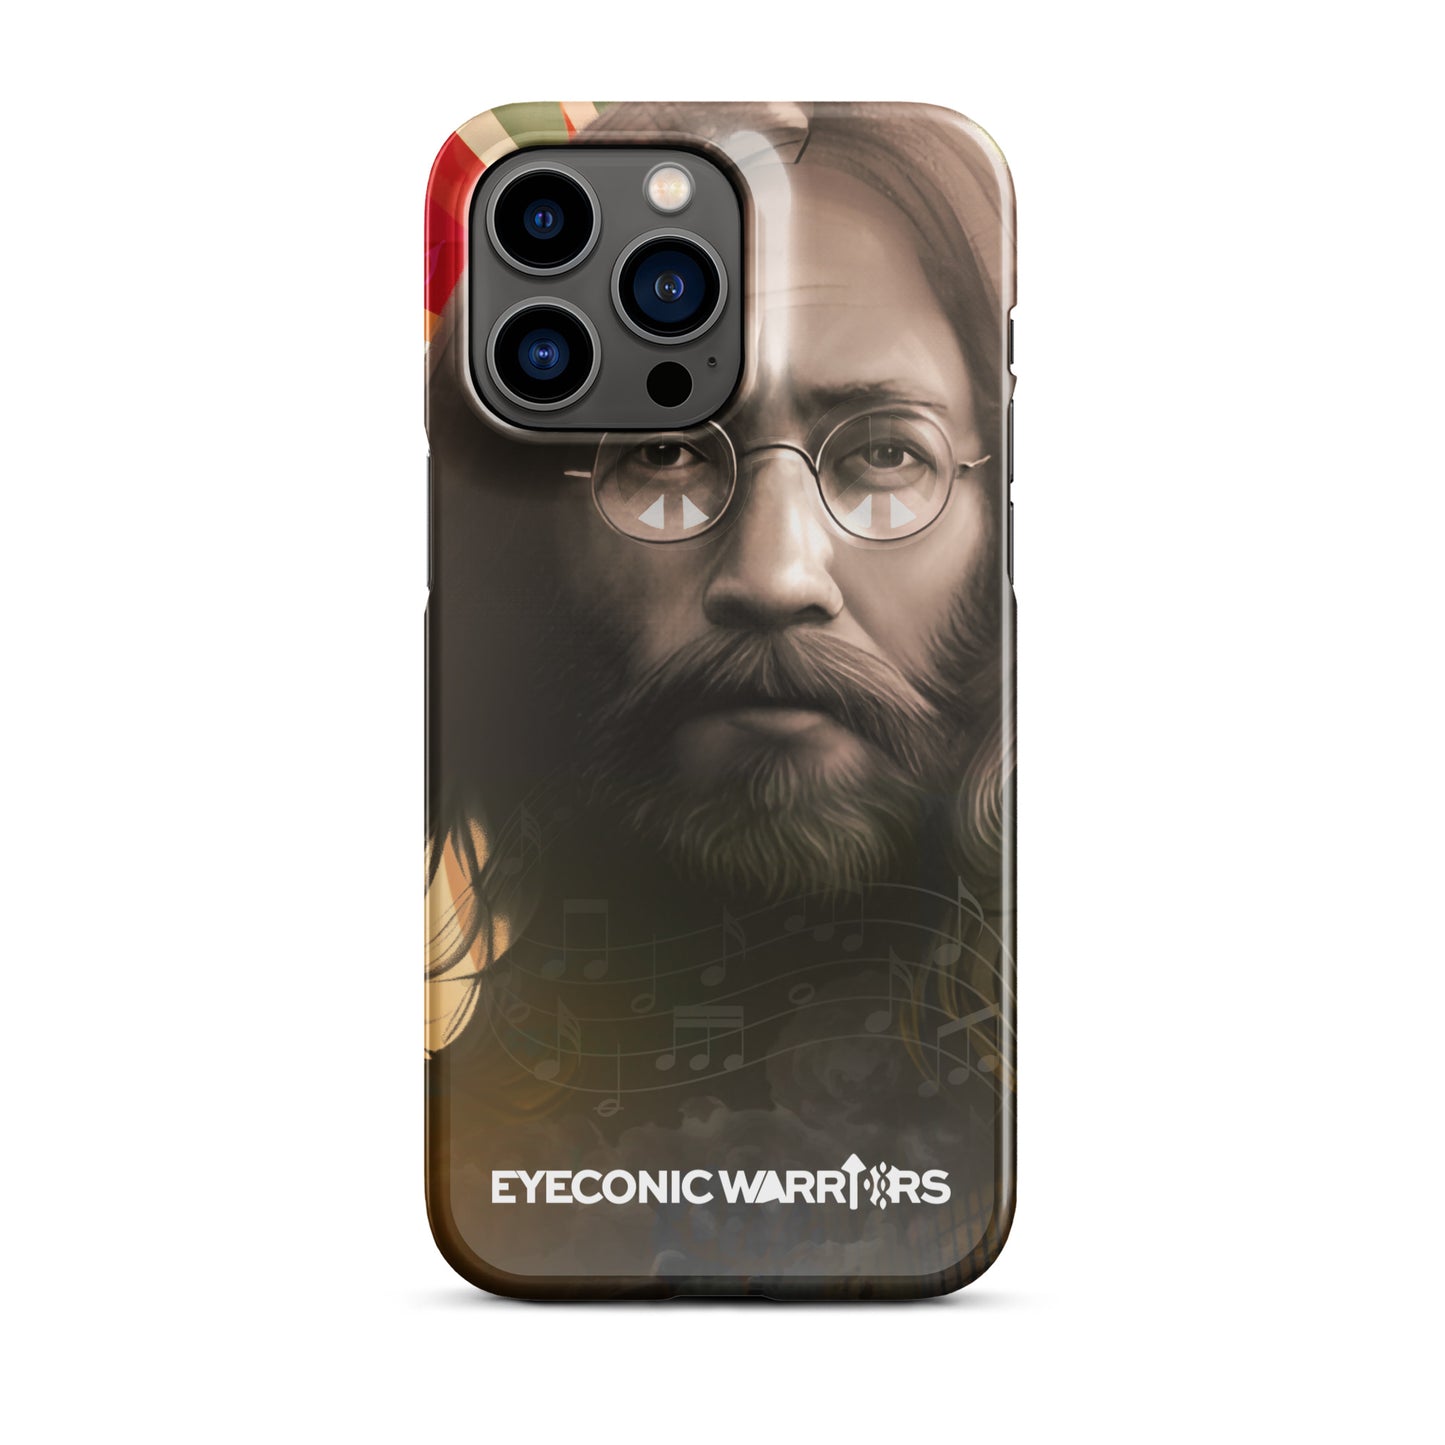 John Lennon Inspired Custom iPhone Case - Art for Change